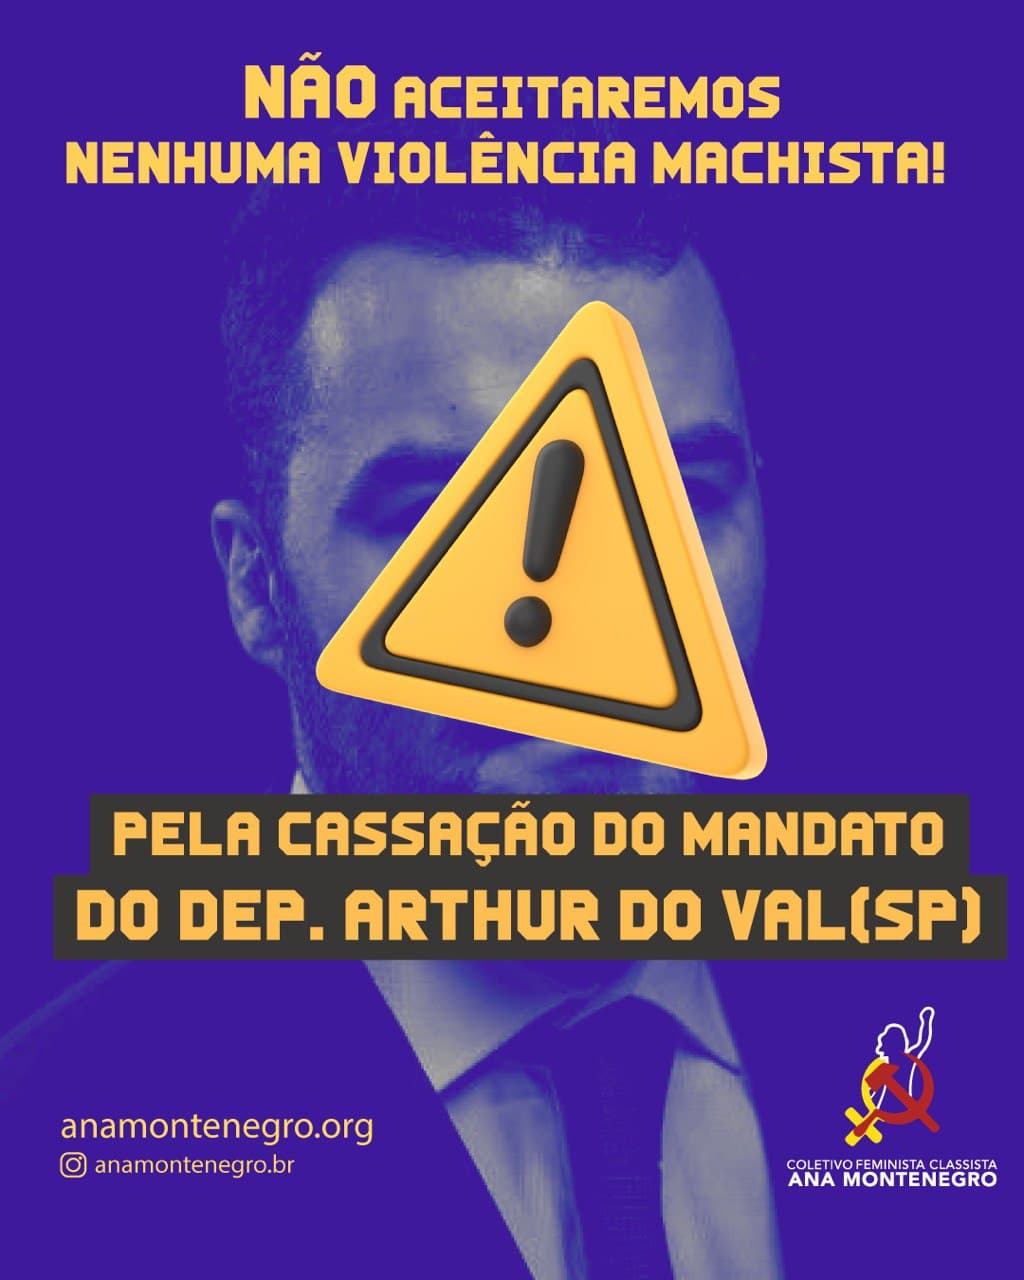 Pela cassação do mandato do Deputado Arthur do Val (SP)! 
Não aceitaremos nenhuma violência machista!